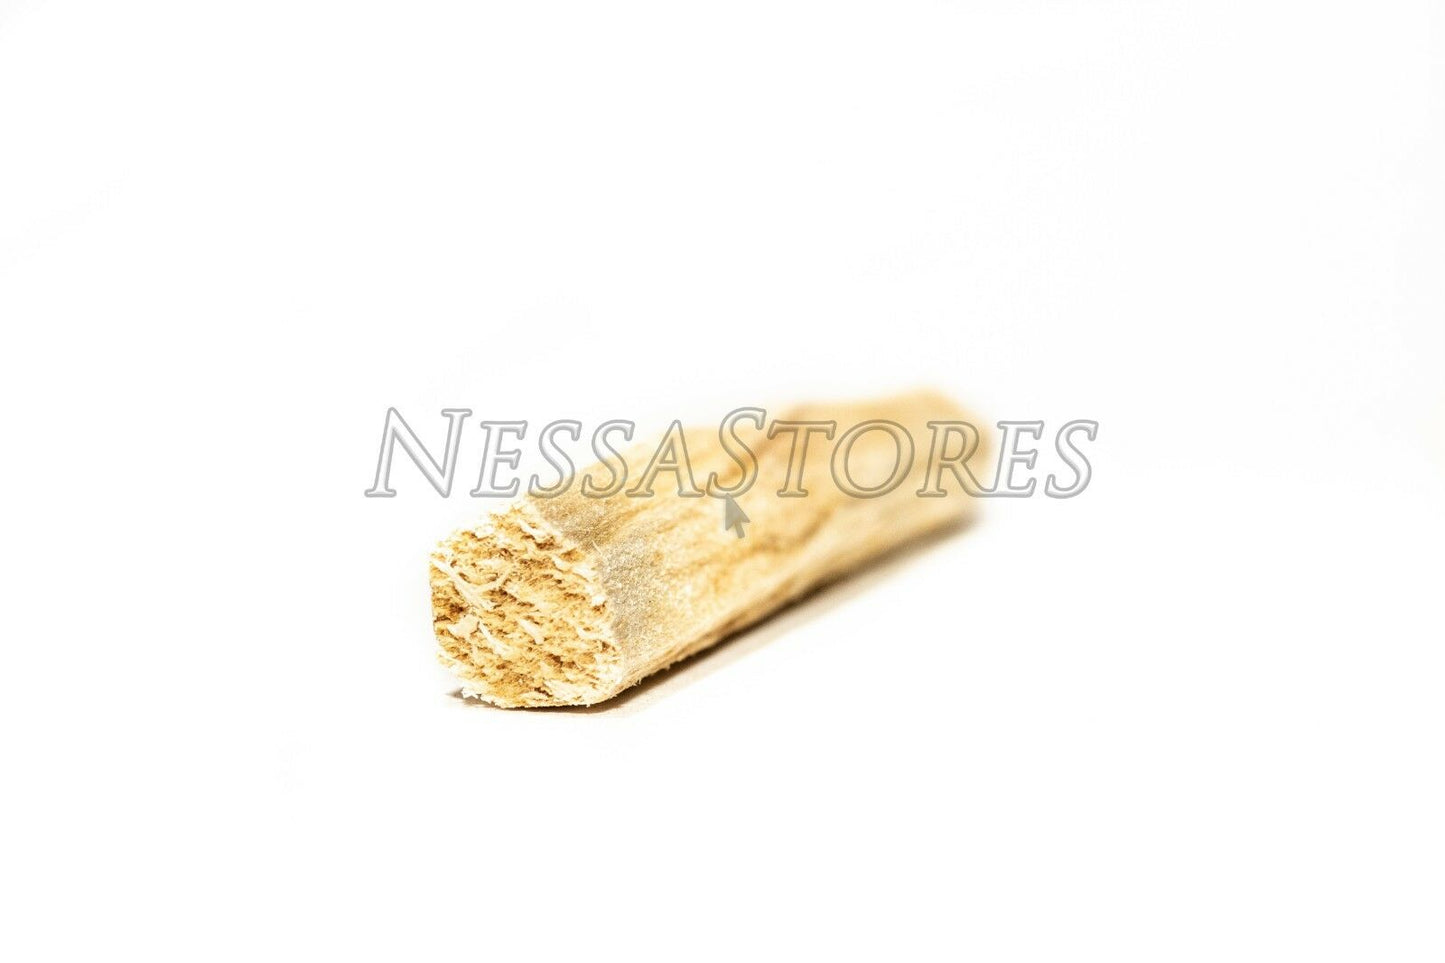 NessaStores Palo Santo Holy Wood Incense Sticks Ecuadorian (11 pcs) #JC-064